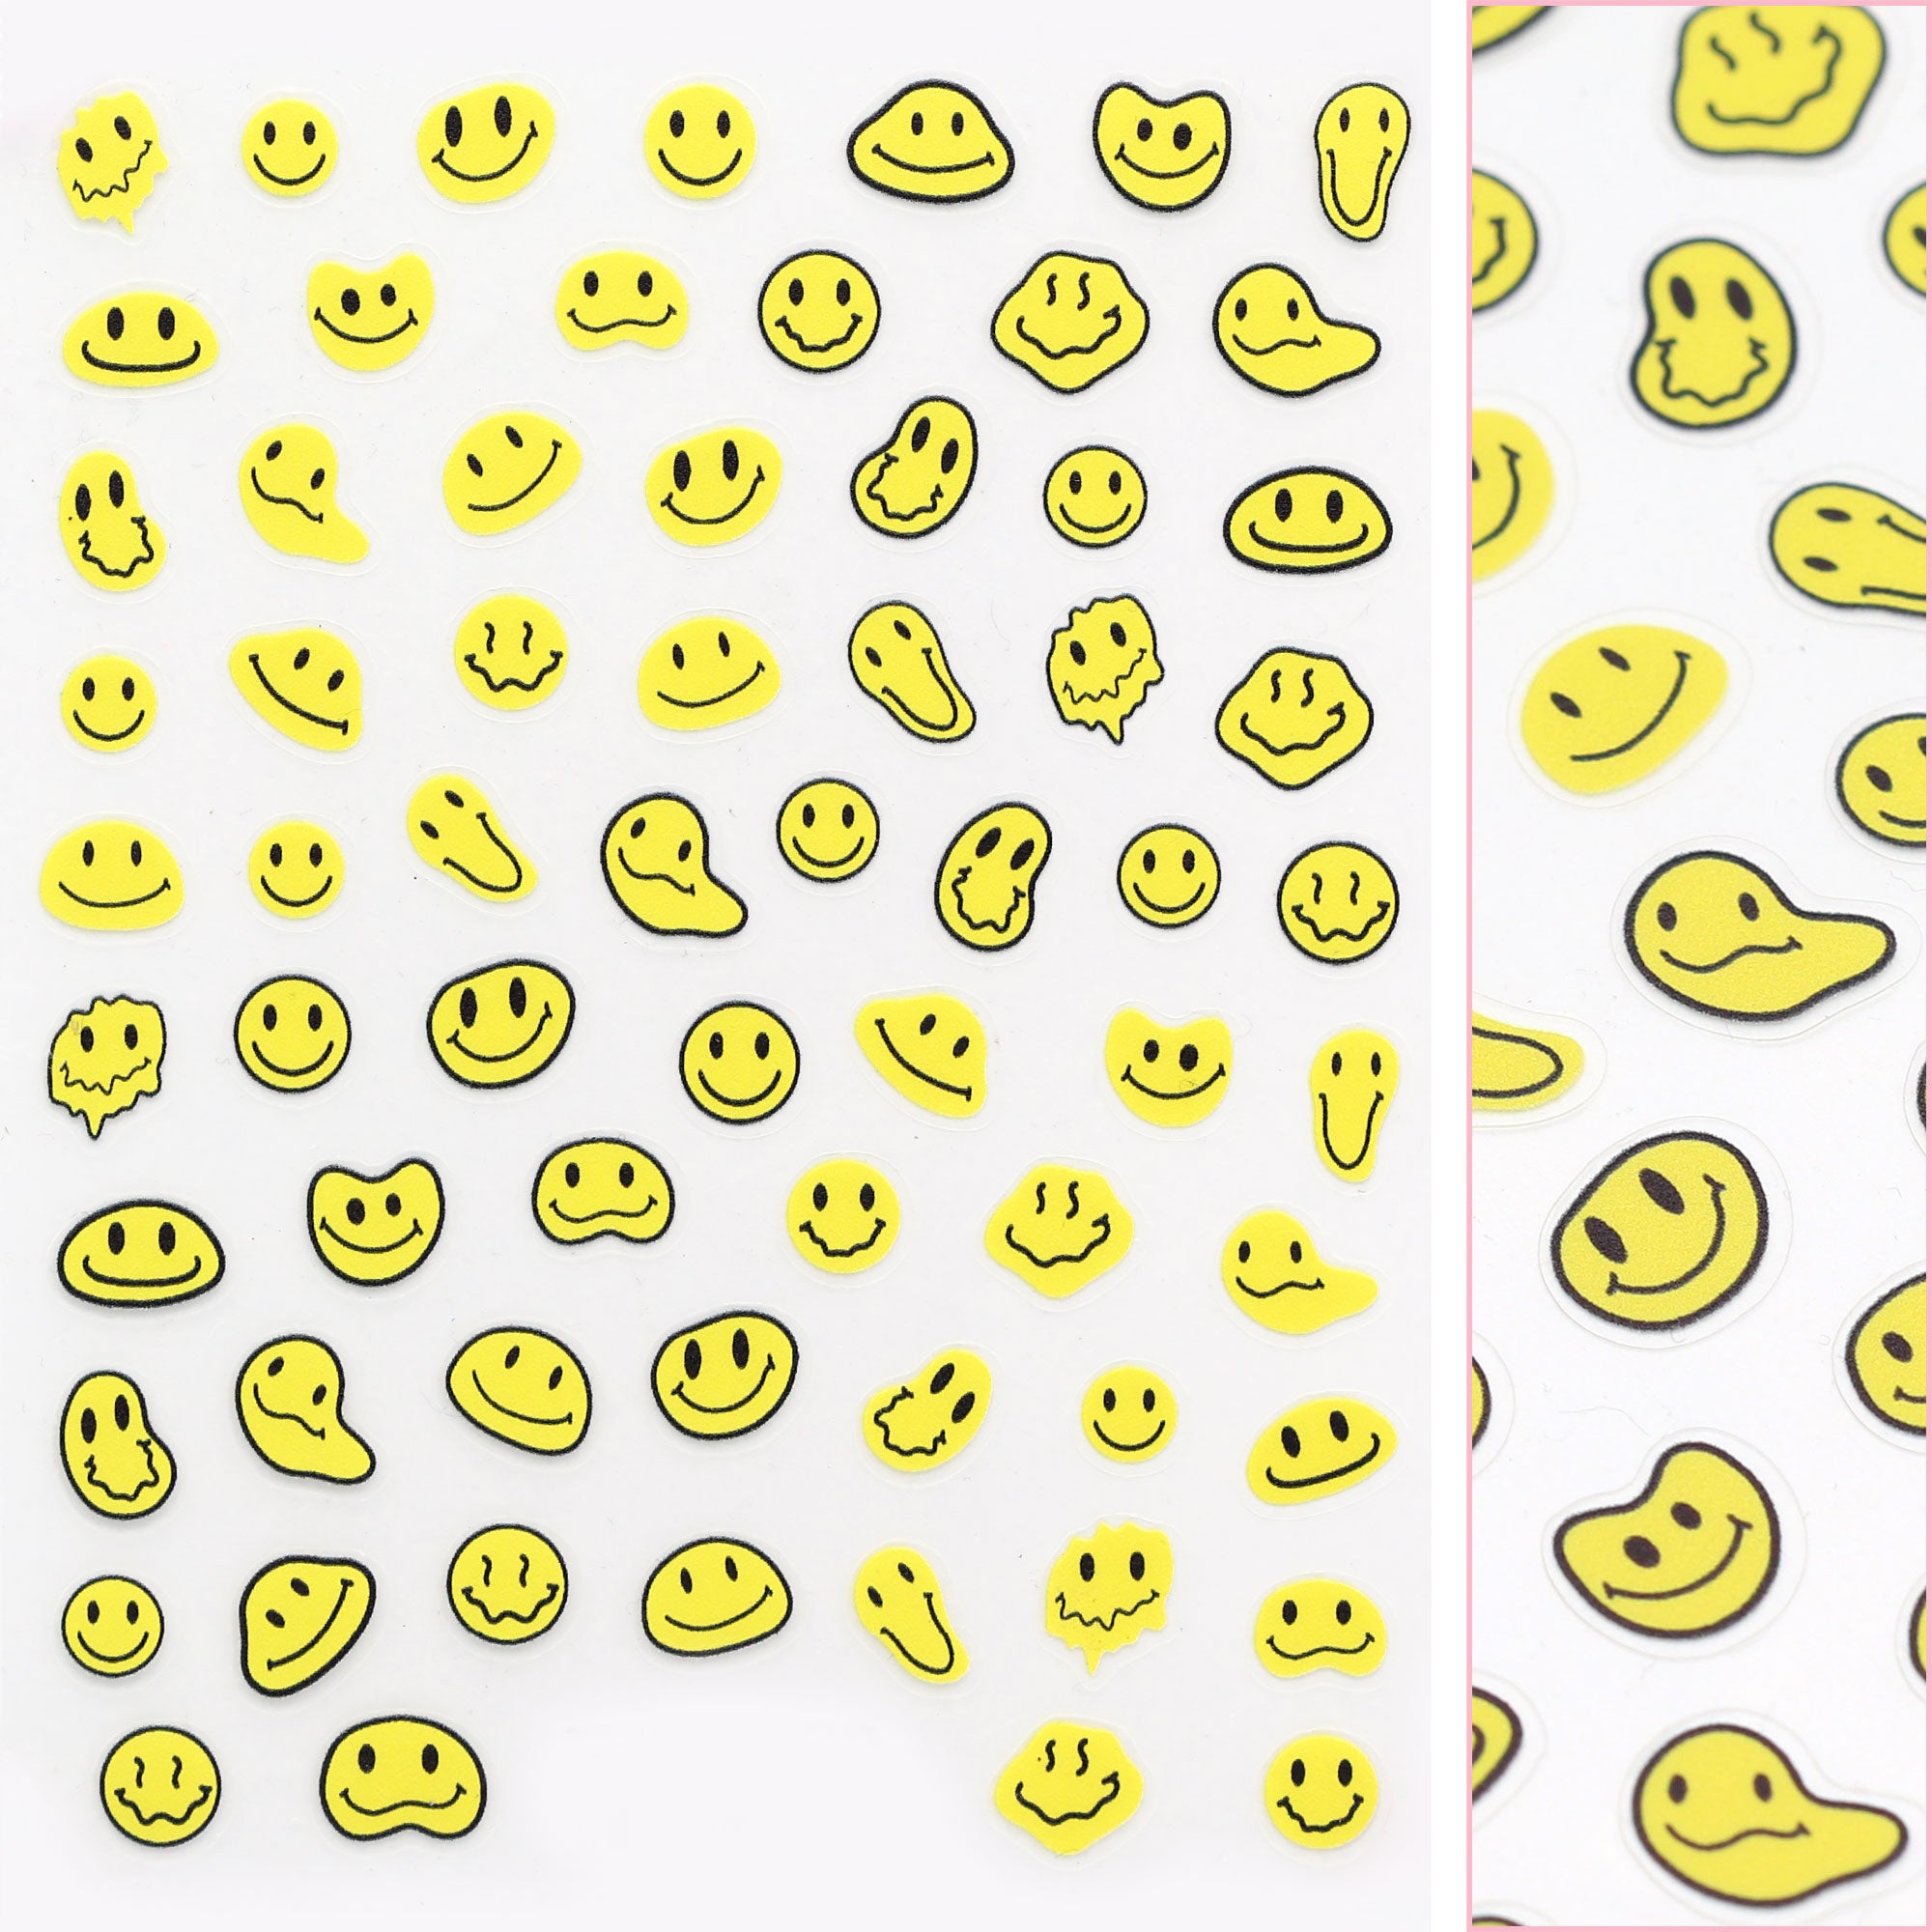 Daily Charme Nail Art | Kawaii Nail Art Sticker / Melty Smiley Faces